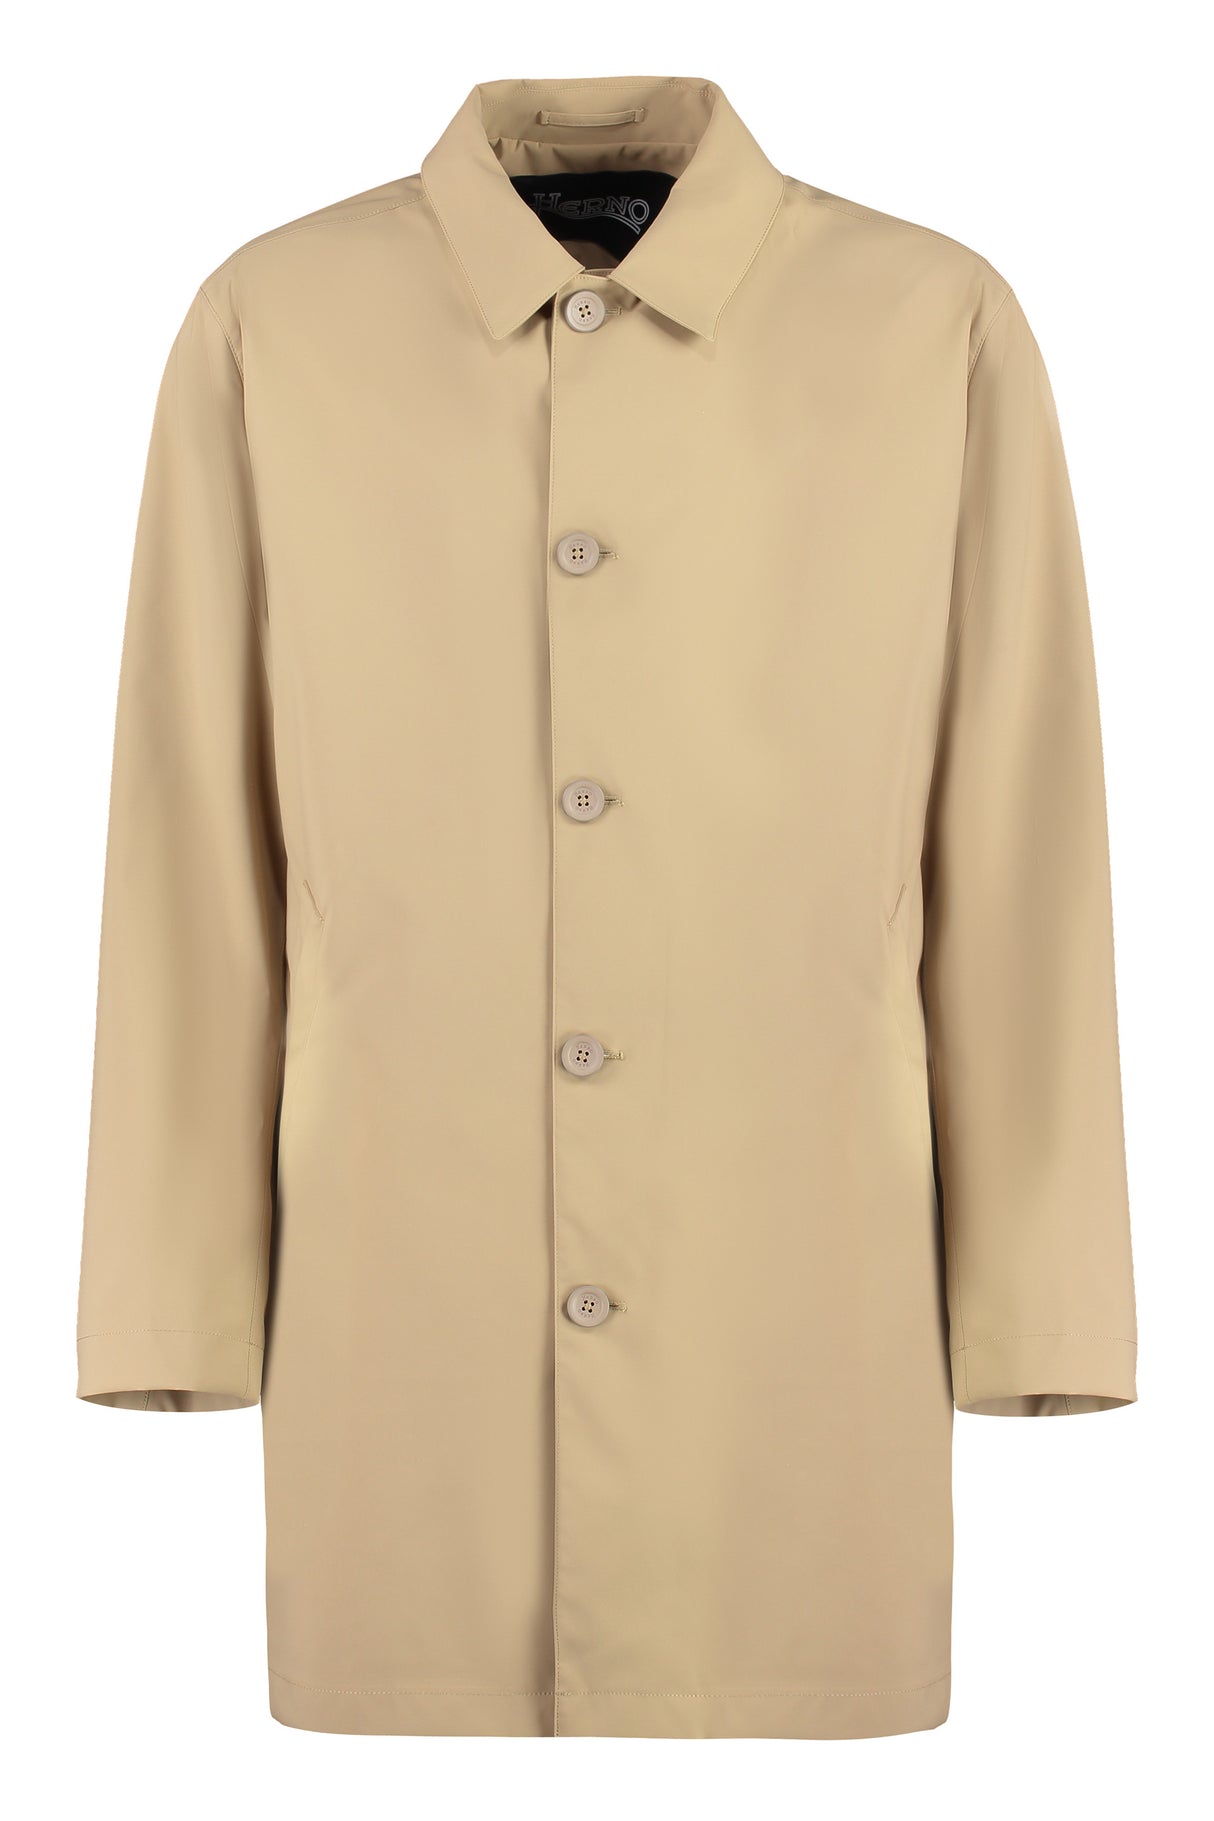 Áo khoác vải màu be cho nam - Nhẹ nhàng và tiện dụng cho mùa xuân hè 24